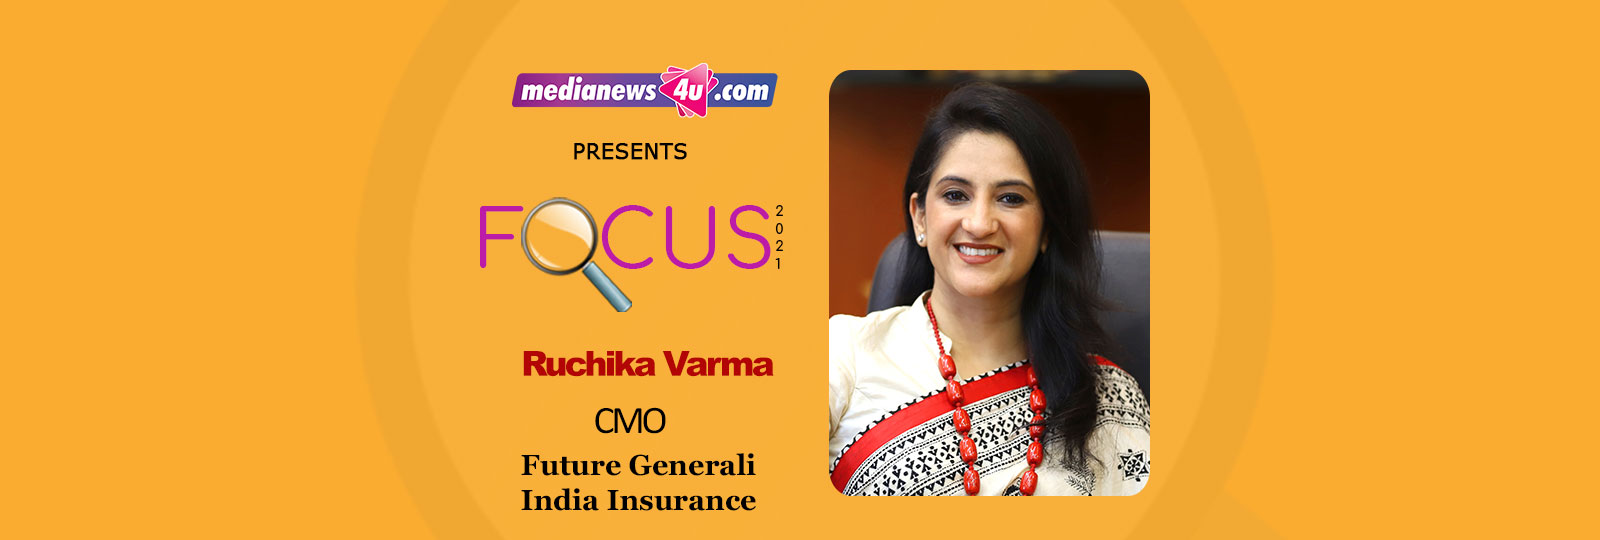 Ruchika Varma, Chief Marketing Officer, Future Generali India Insurance